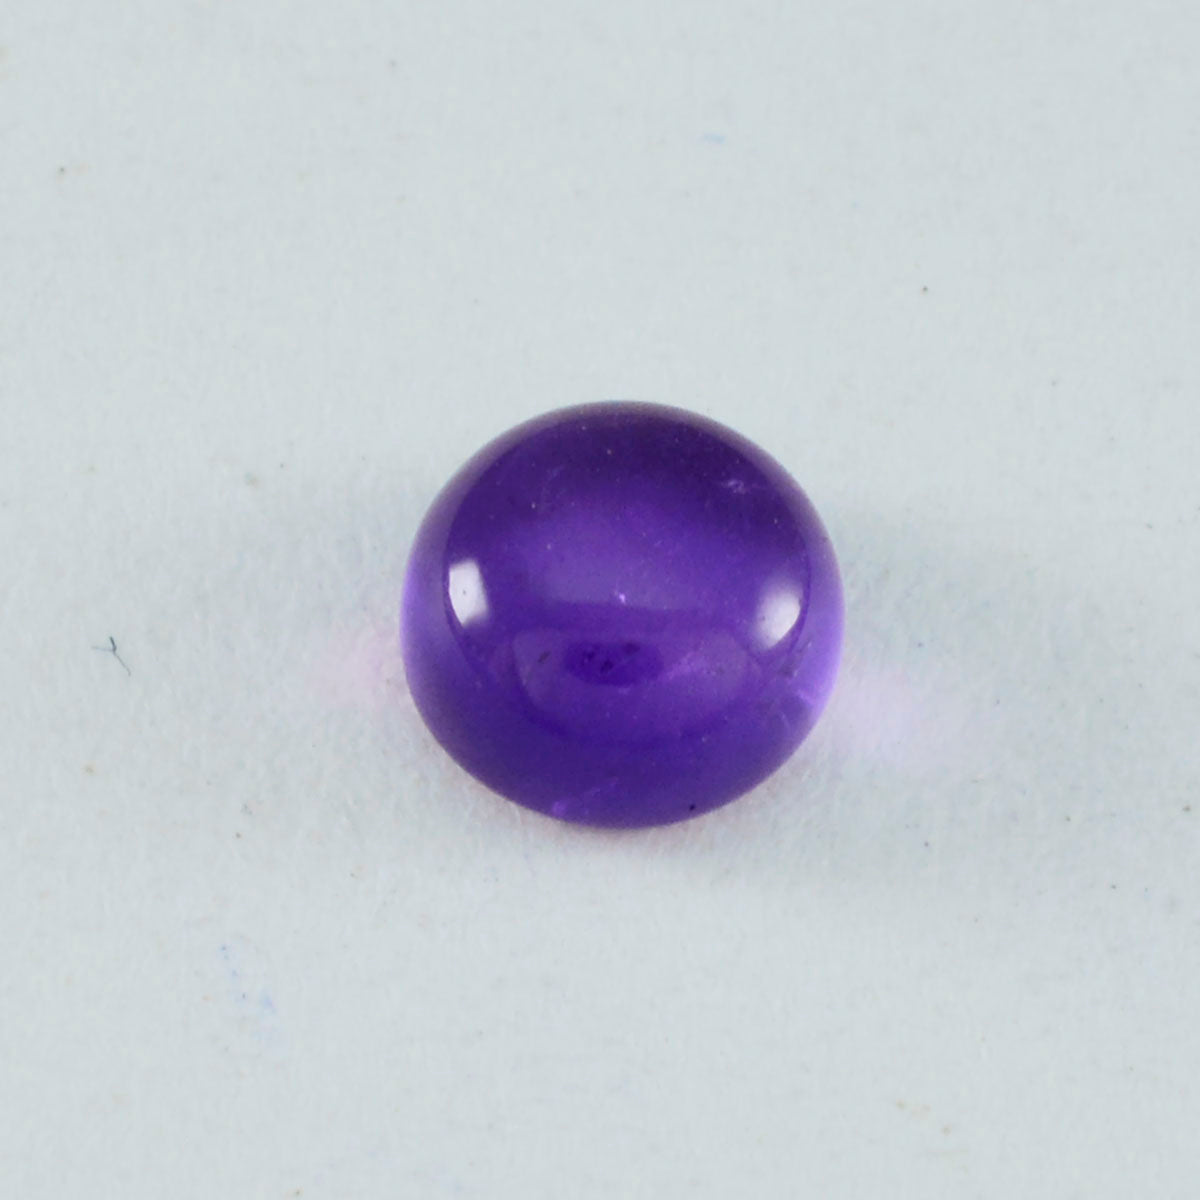 riyogems 1шт фиолетовый аметист кабошон 11х11 мм круглая форма драгоценный камень качества ААА